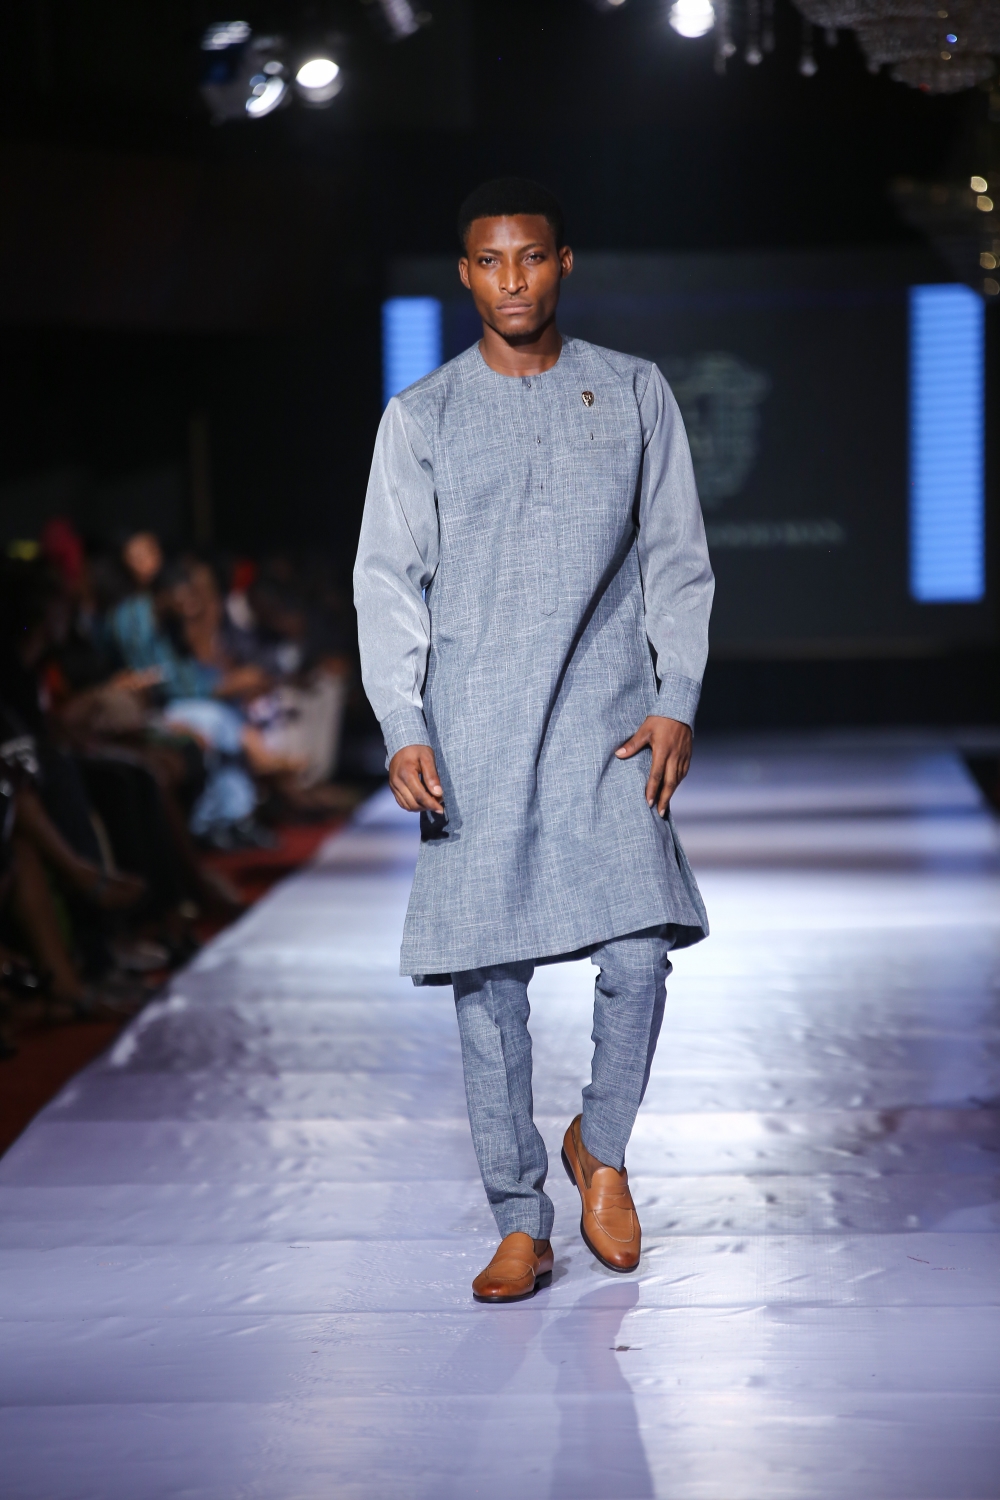 #AFWN17 | Africa Fashion Week Nigeria Day 1: LLGB